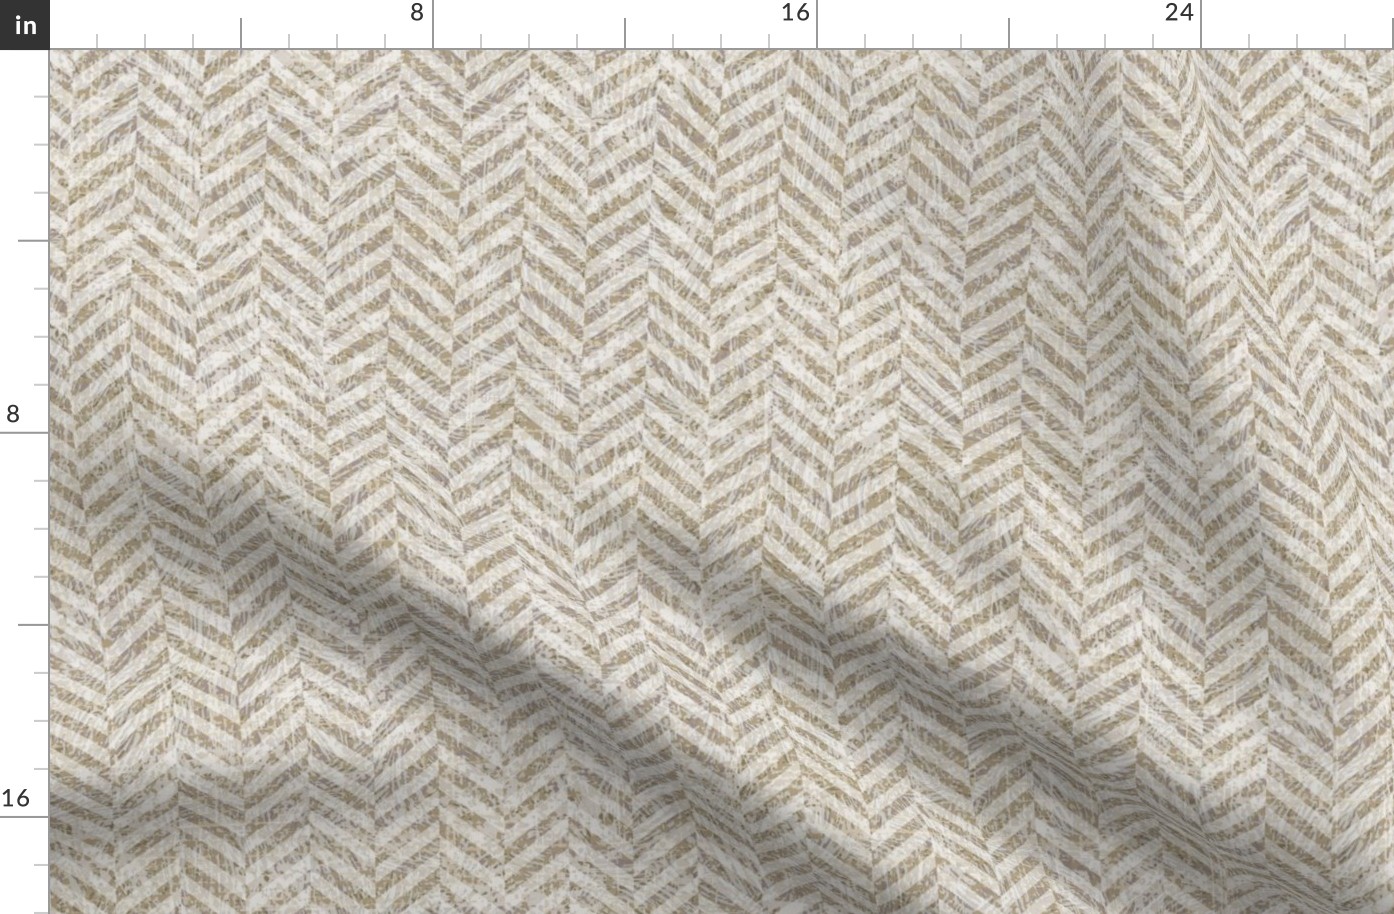 Tweed Herringbone Woollen Cloth Beige Grey Small Scale